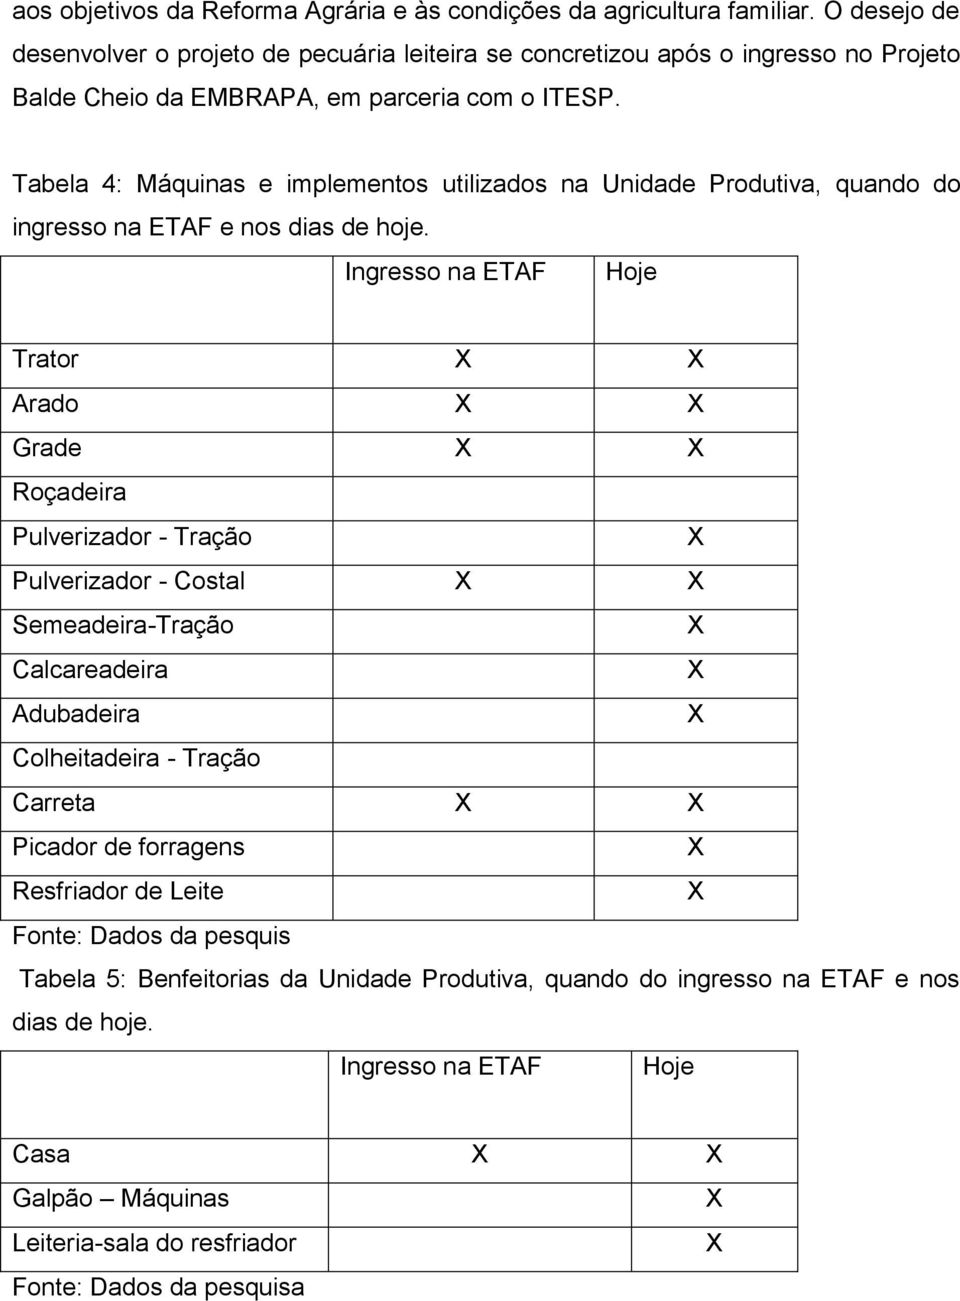 Tabela 4: Máquinas e implementos utilizados na Unidade Produtiva, quando do ingresso na ETAF e nos dias de hoje.